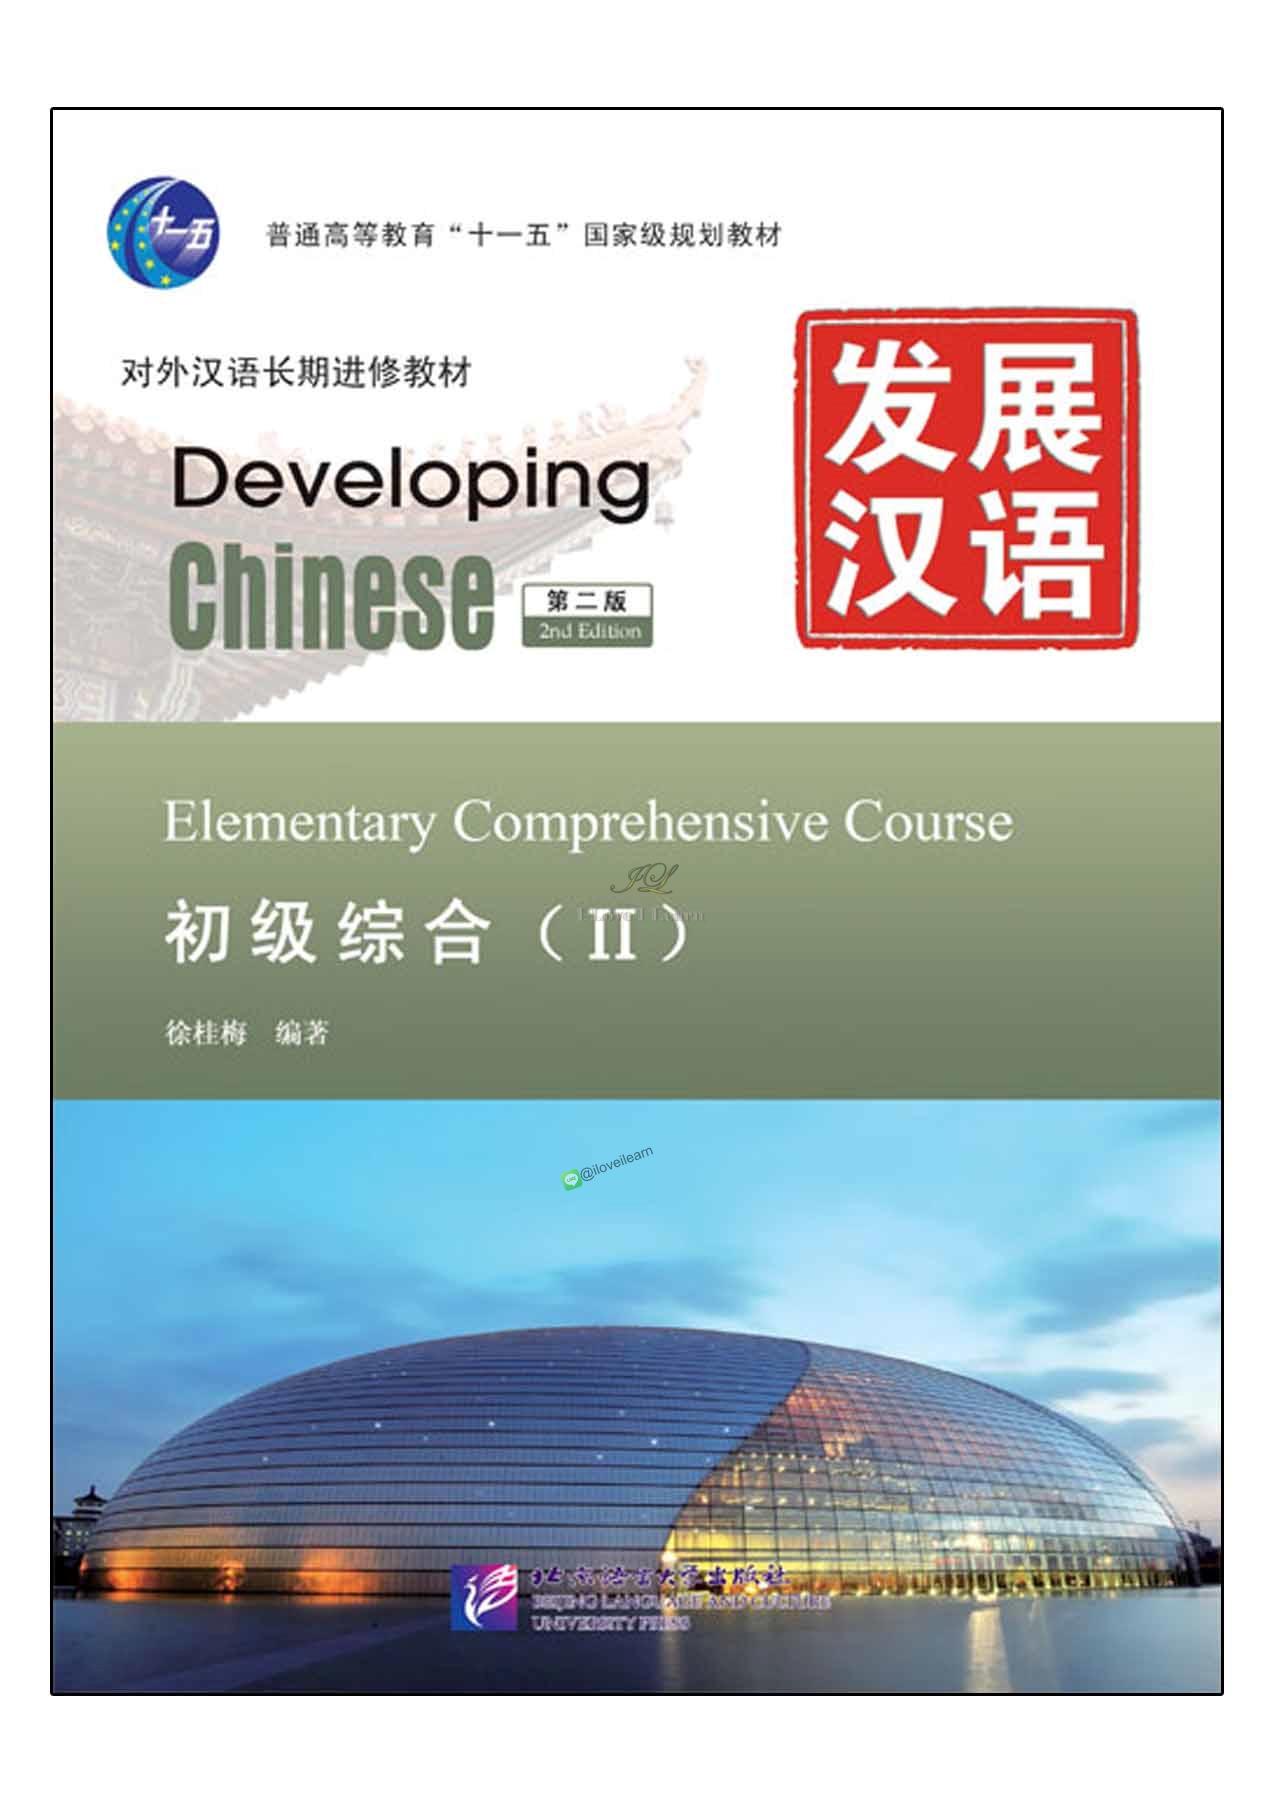 ตำราเรียน Developing Chinese (2nd Edition) Elementary Comprehensive Course Ⅱ+MP3 Developing Chinese (2nd Edition) Elementary Comprehensive Course Ⅱ+MP3 发展汉语（第2版）初级综合（Ⅱ）（含1MP3） แบบเรียนภาษาจีน ยอดนิยม